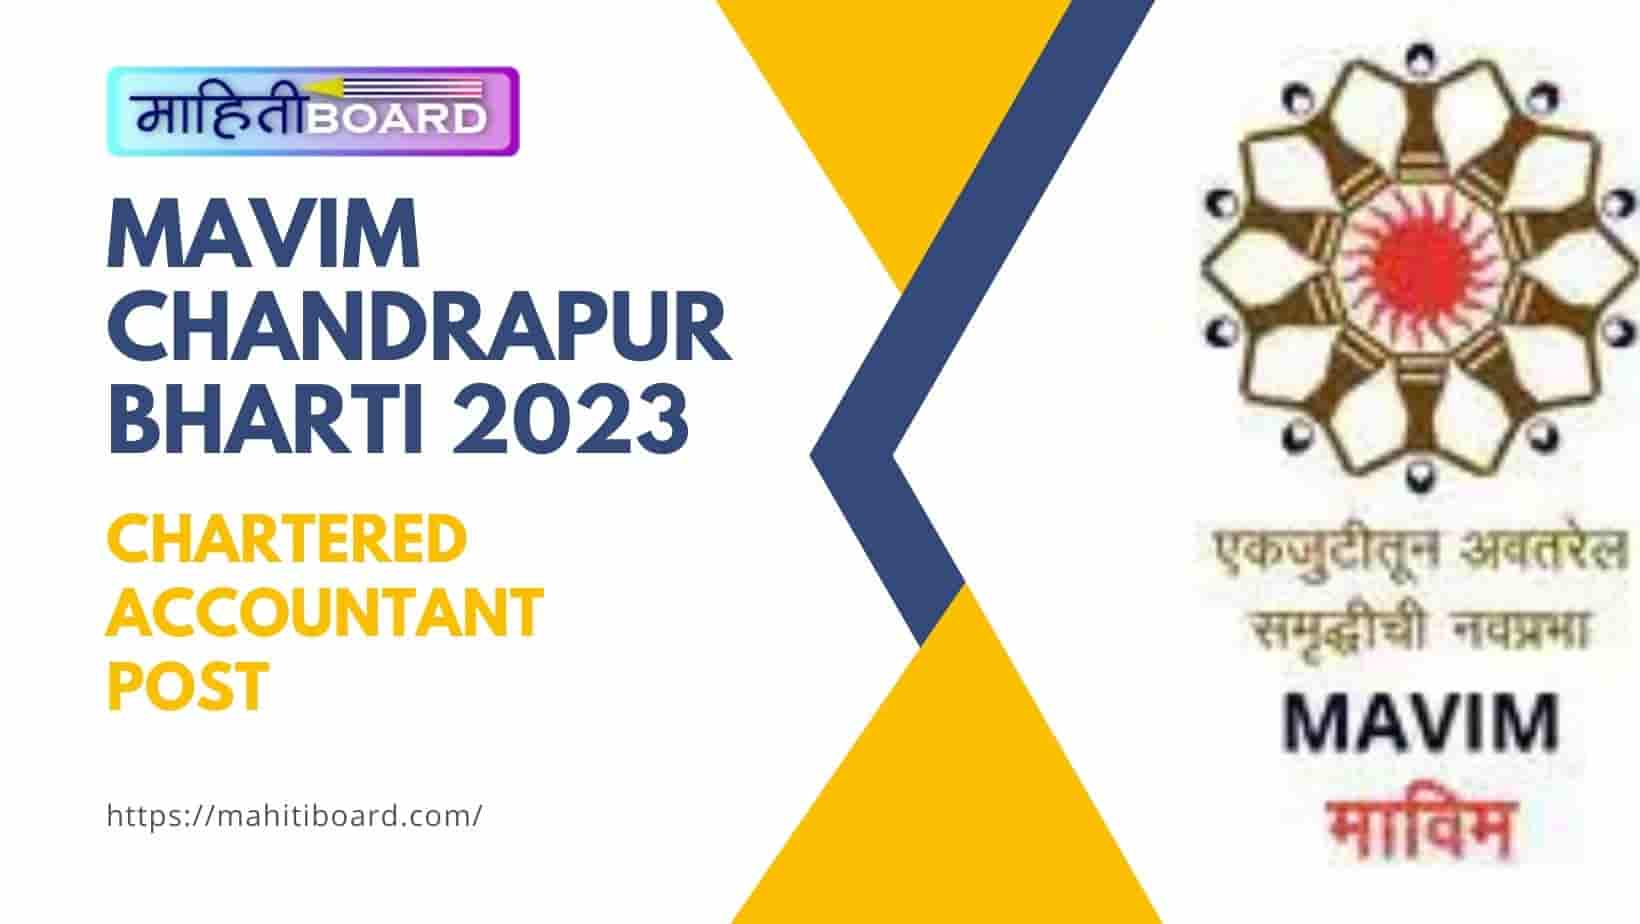 MAVIM Chandrapur Bharti 2023